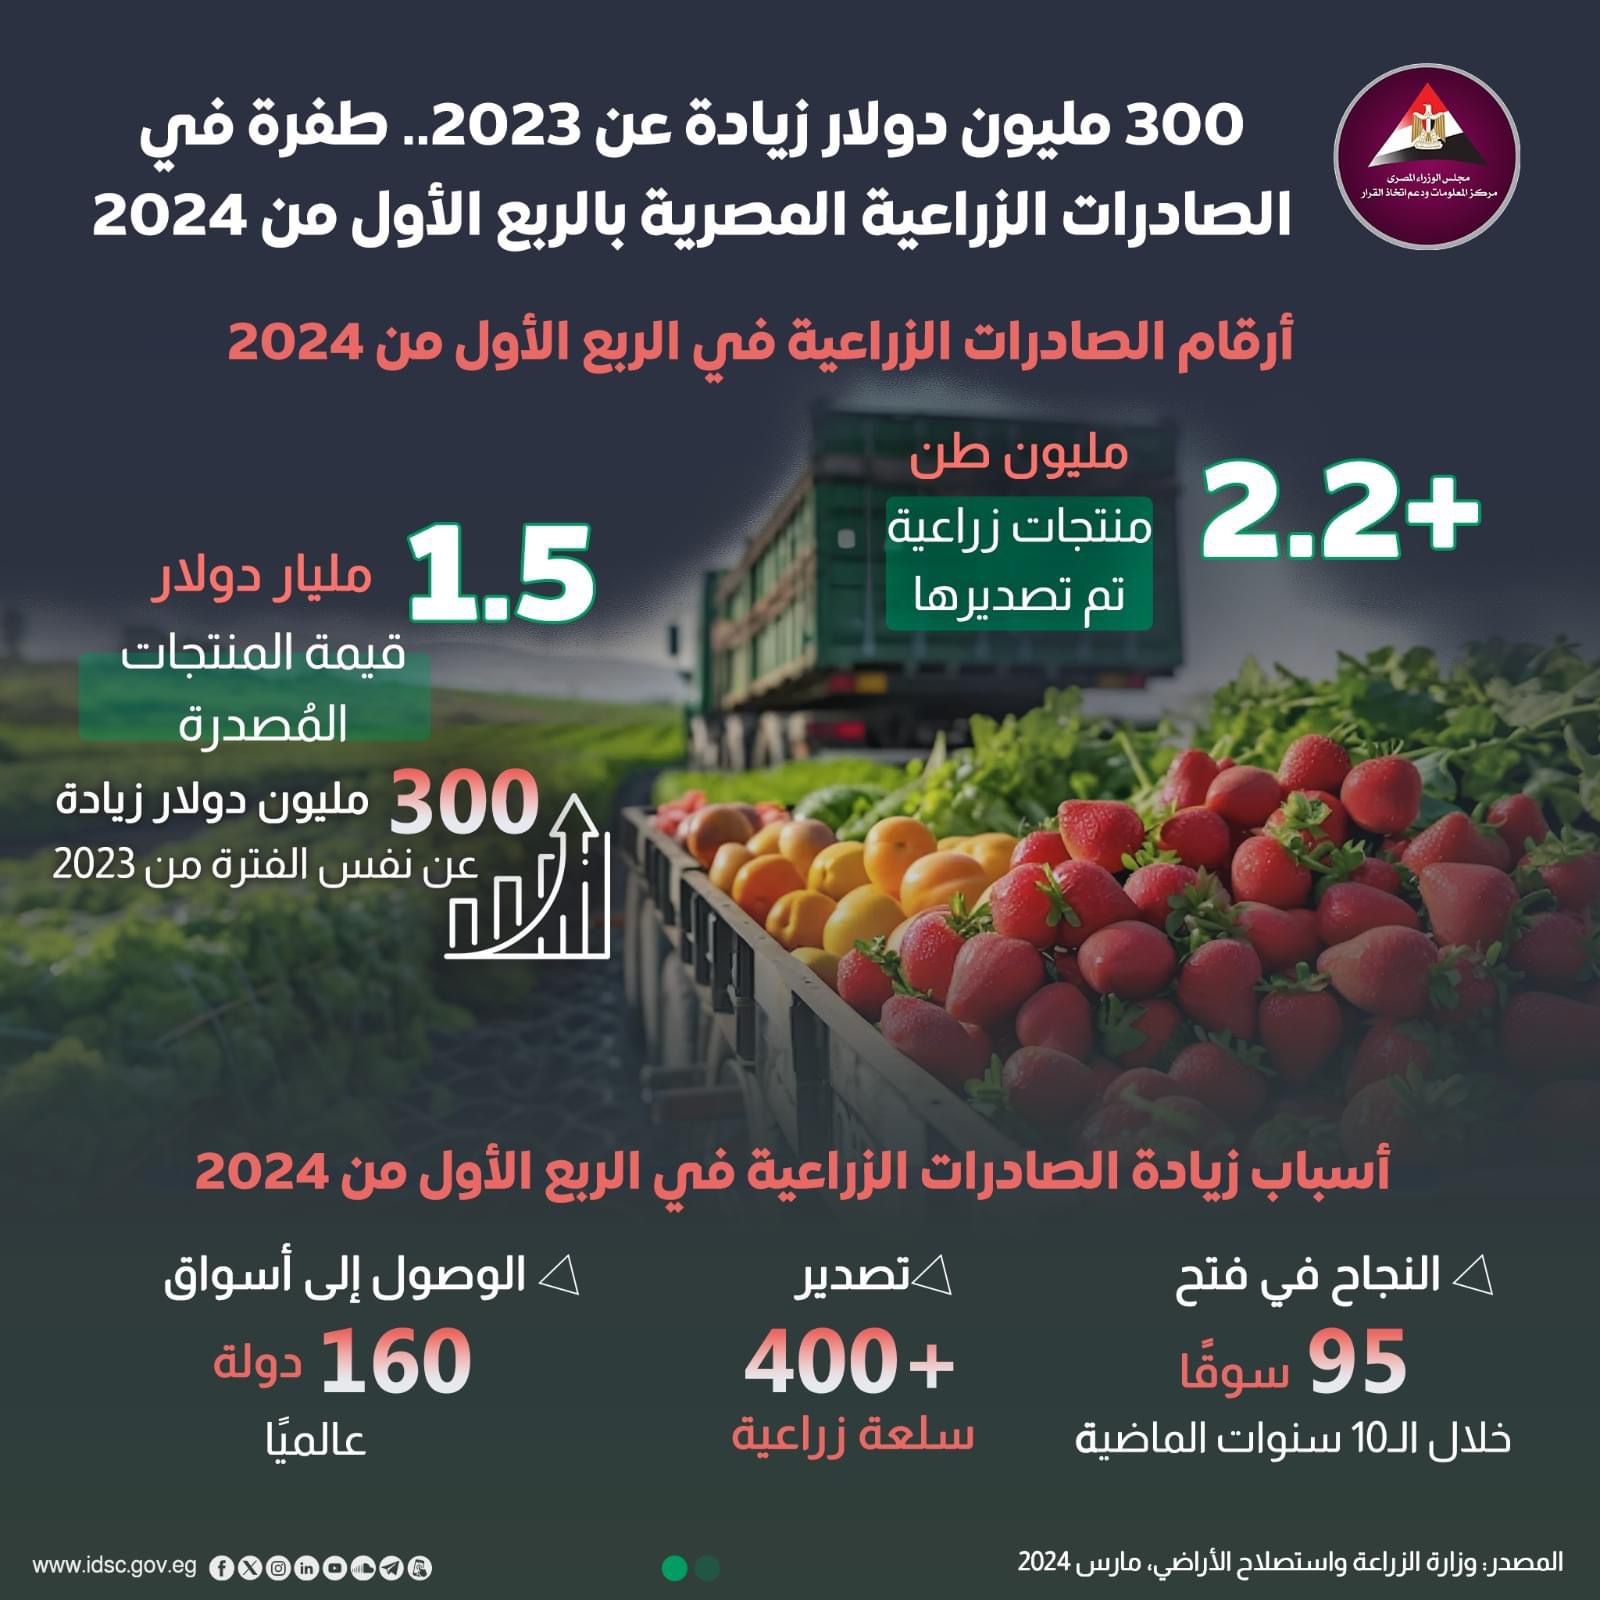 وزير الزراعة: الصادرات الزراعية تجاوزت 2.2 مليون طن فى الربع الأول من 2024